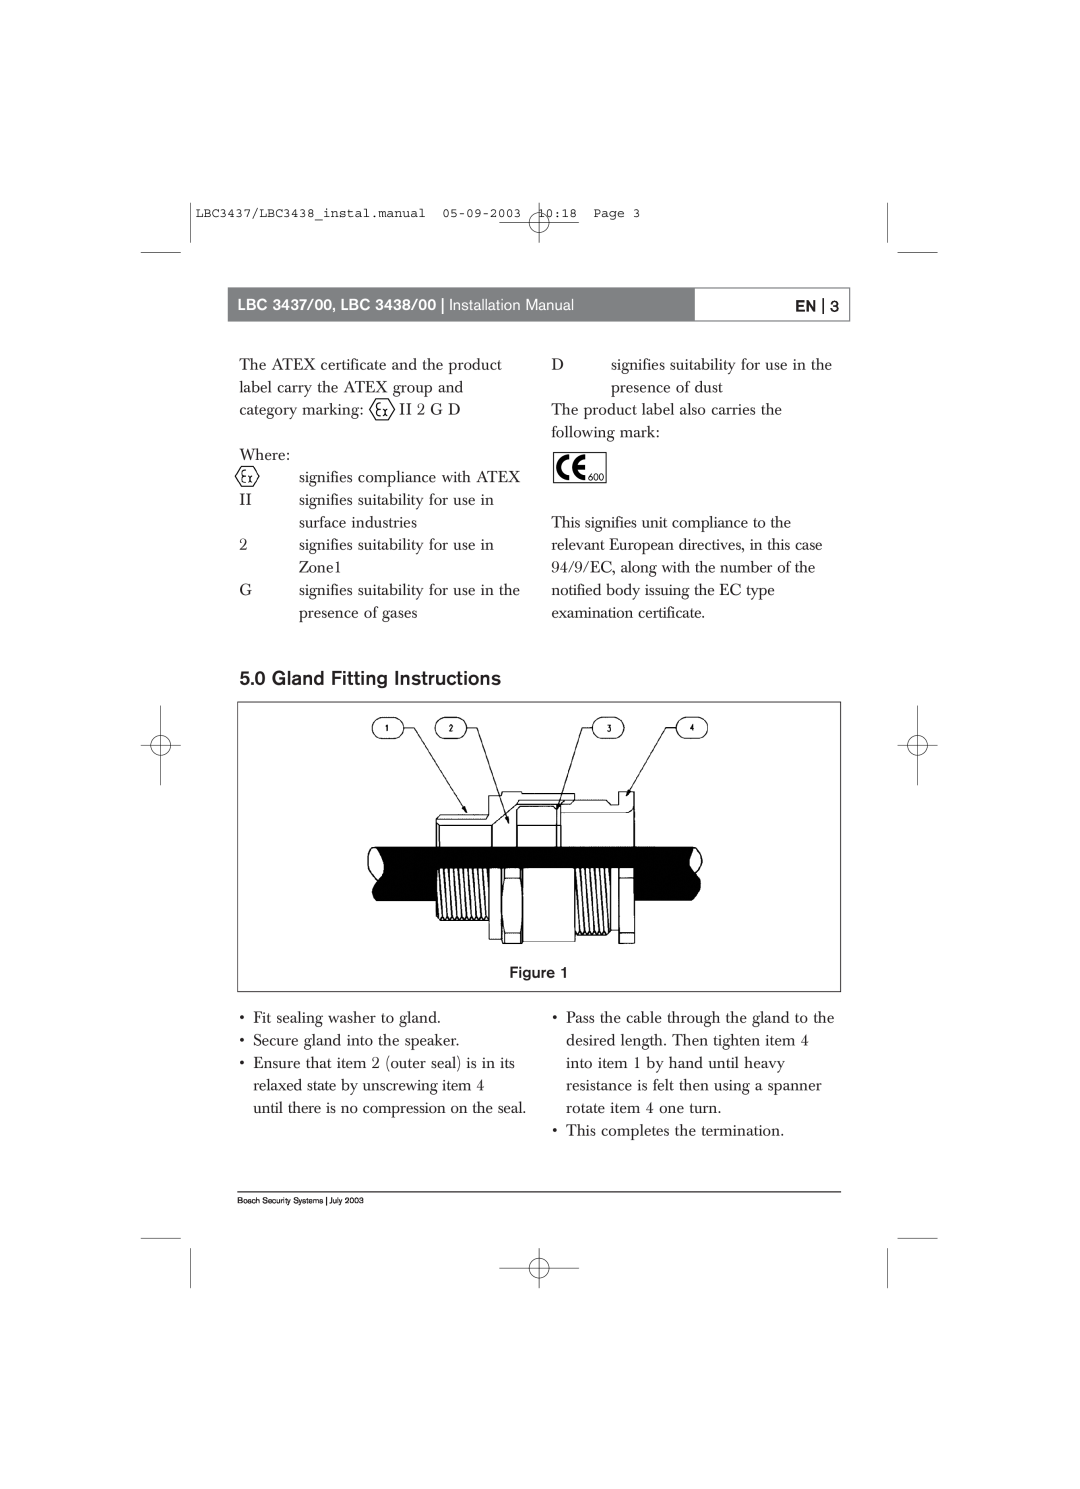 Bosch Appliances installation manual Gland Fitting Instructions, LBC 3437/00, LBC 3438/00 Installation Manual 